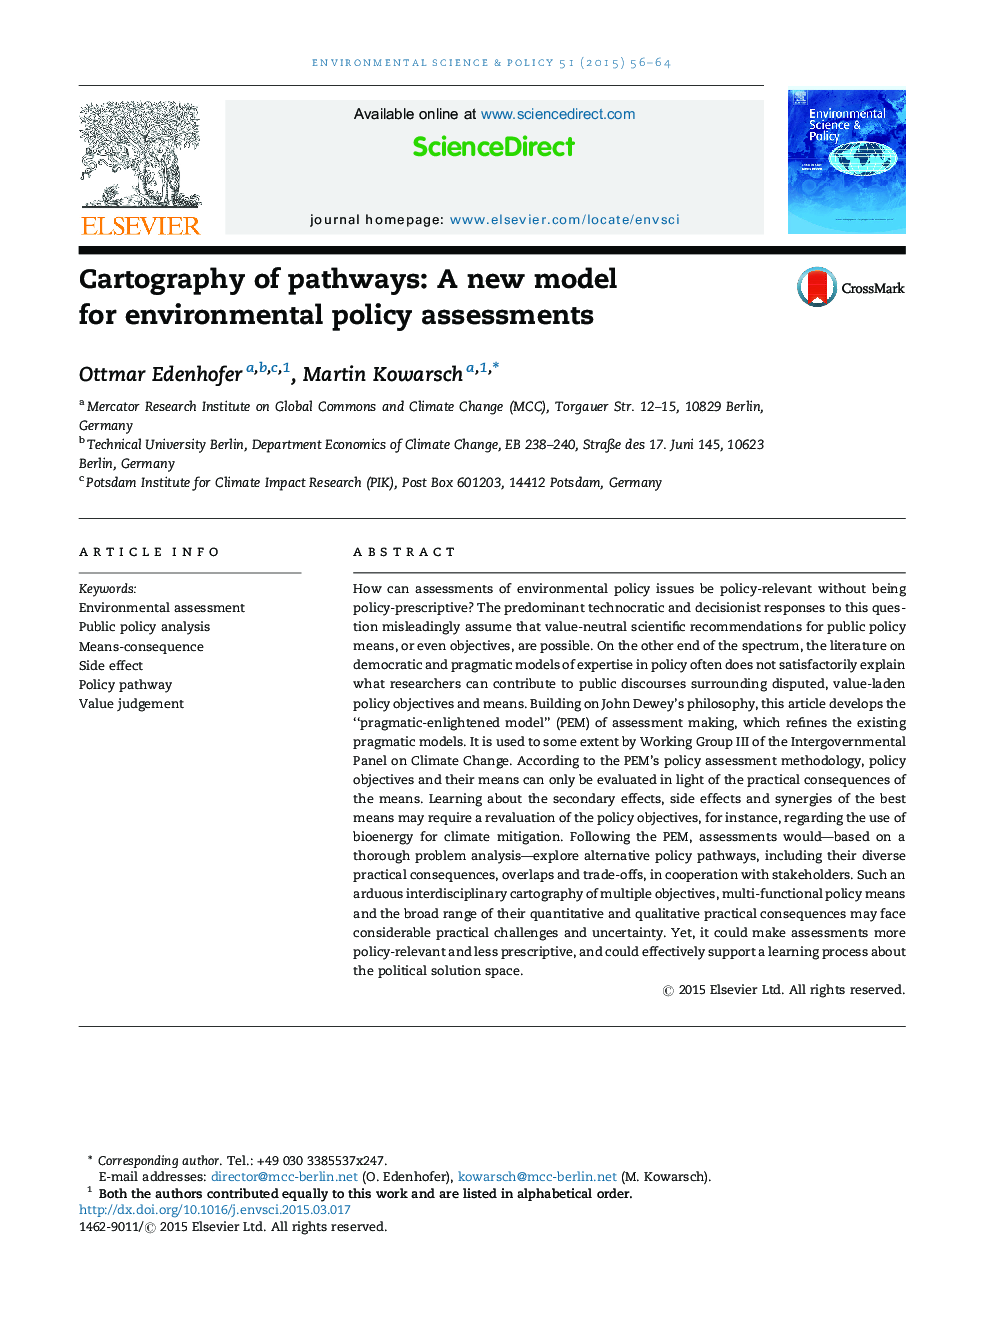 نقشه کشی مسیرها: یک مدل جدید برای ارزیابی سیاست های زیست محیطی 